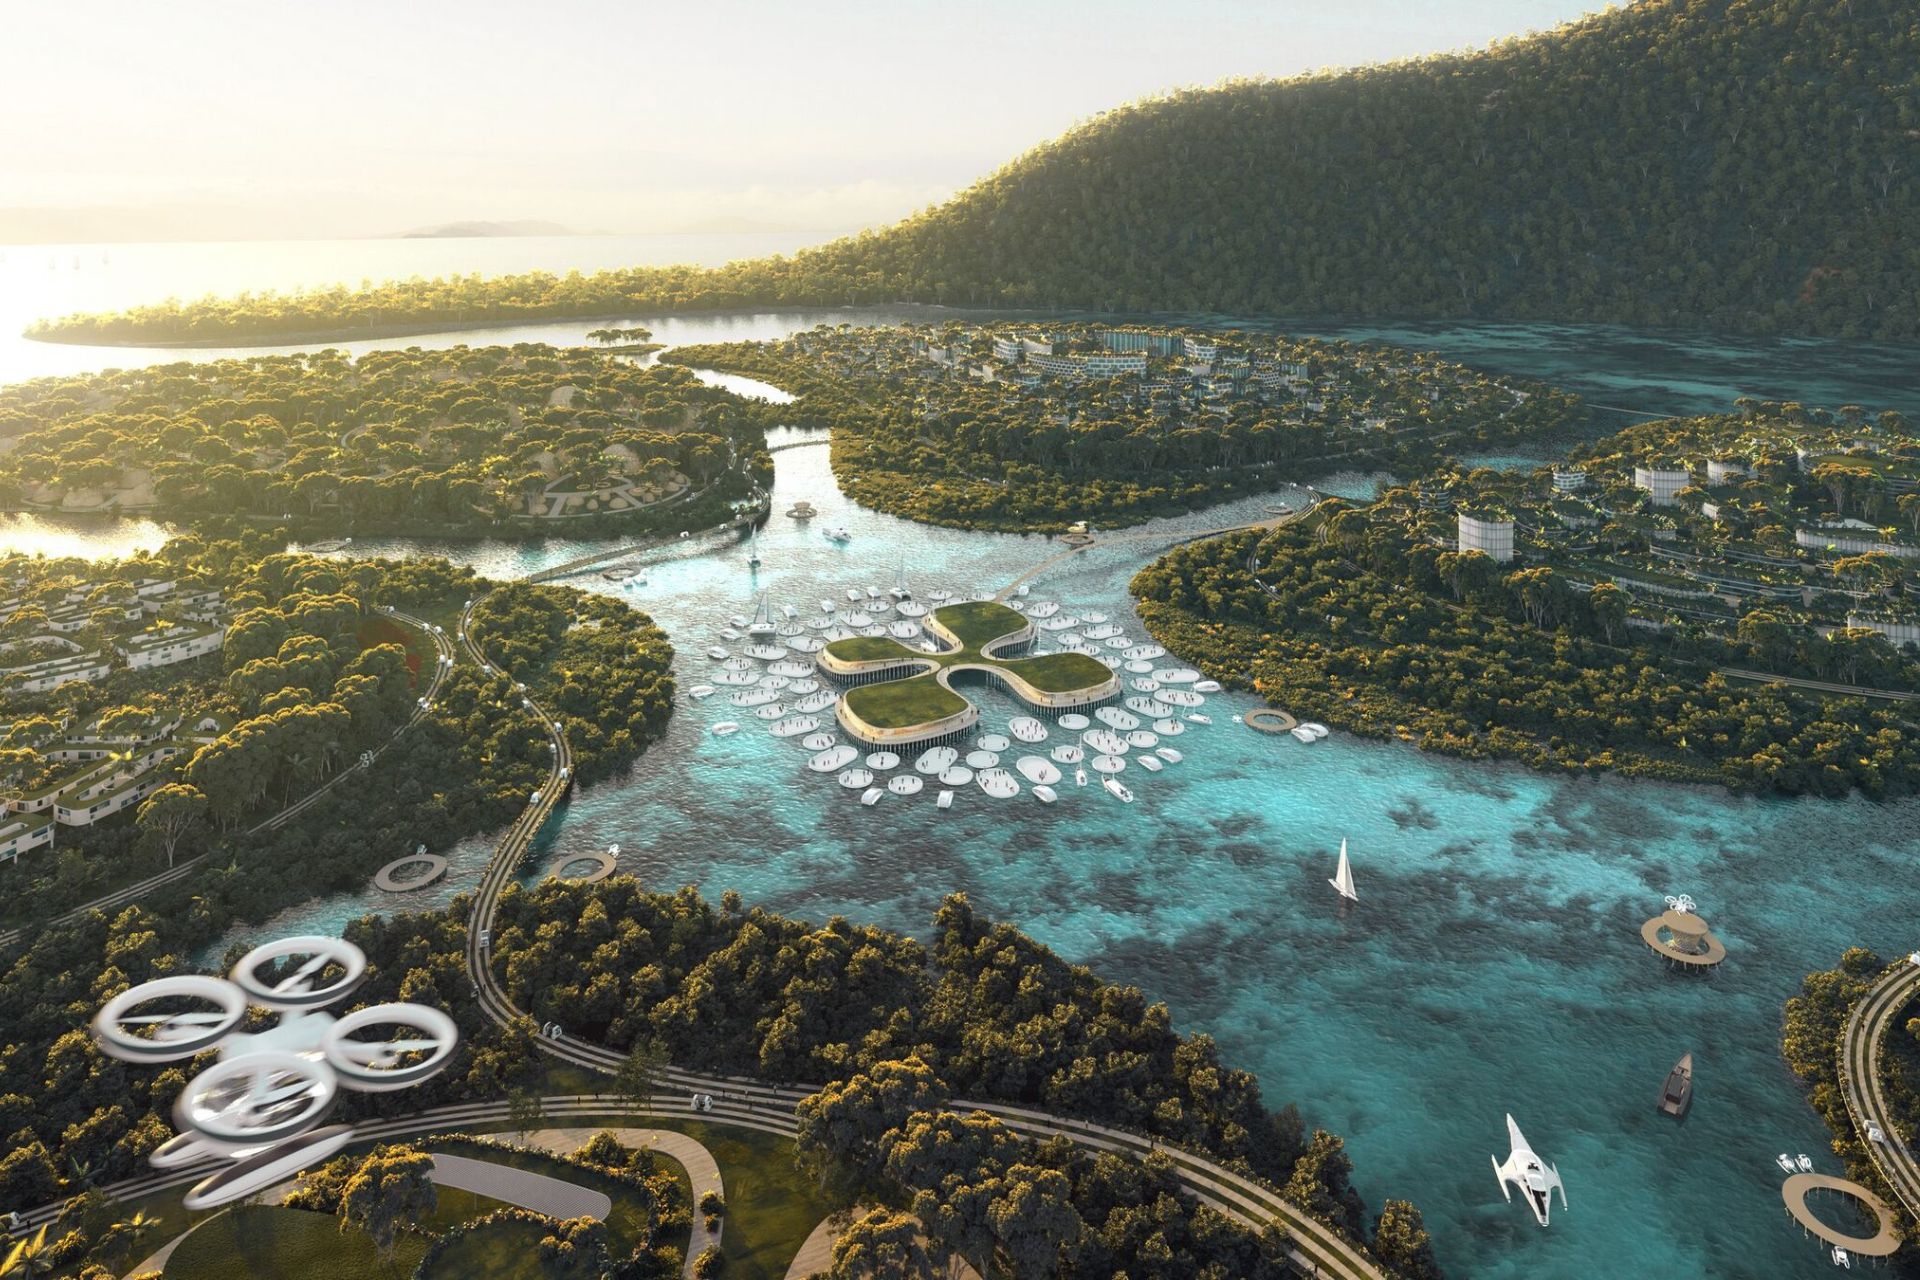 BiodiverCity: Ирээдүйн хот нь байгаль, технологийг хослуулсан: Биологийн олон янз байдал 2030 онд Азид хүрэх үү?